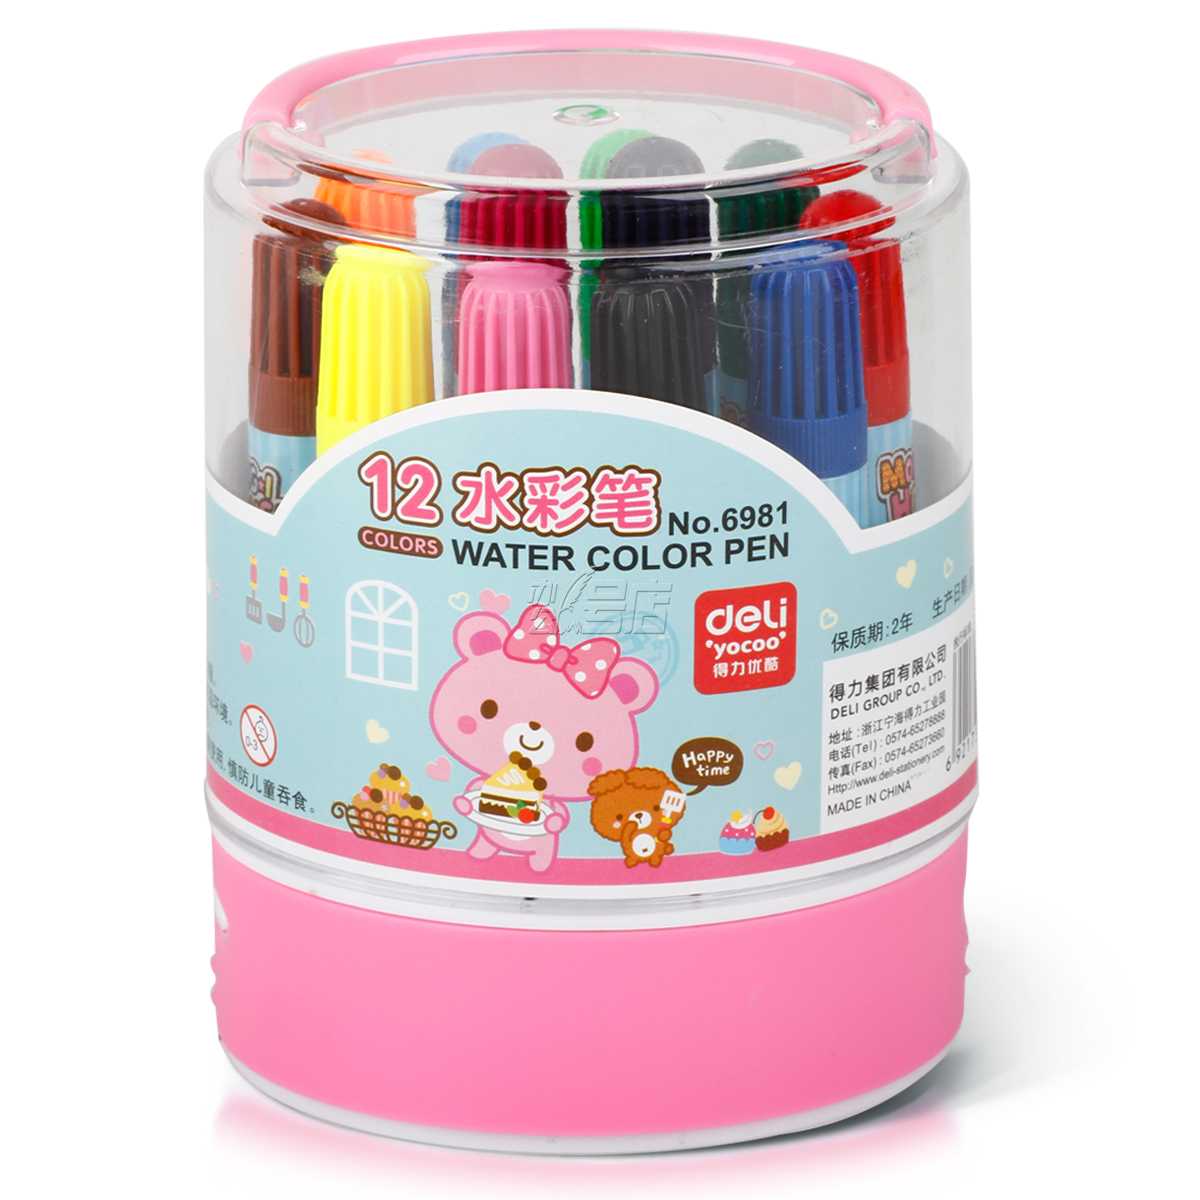 得力6981水彩笔 桶装水彩笔 得力12色水彩笔 安全环保 儿童绘画笔